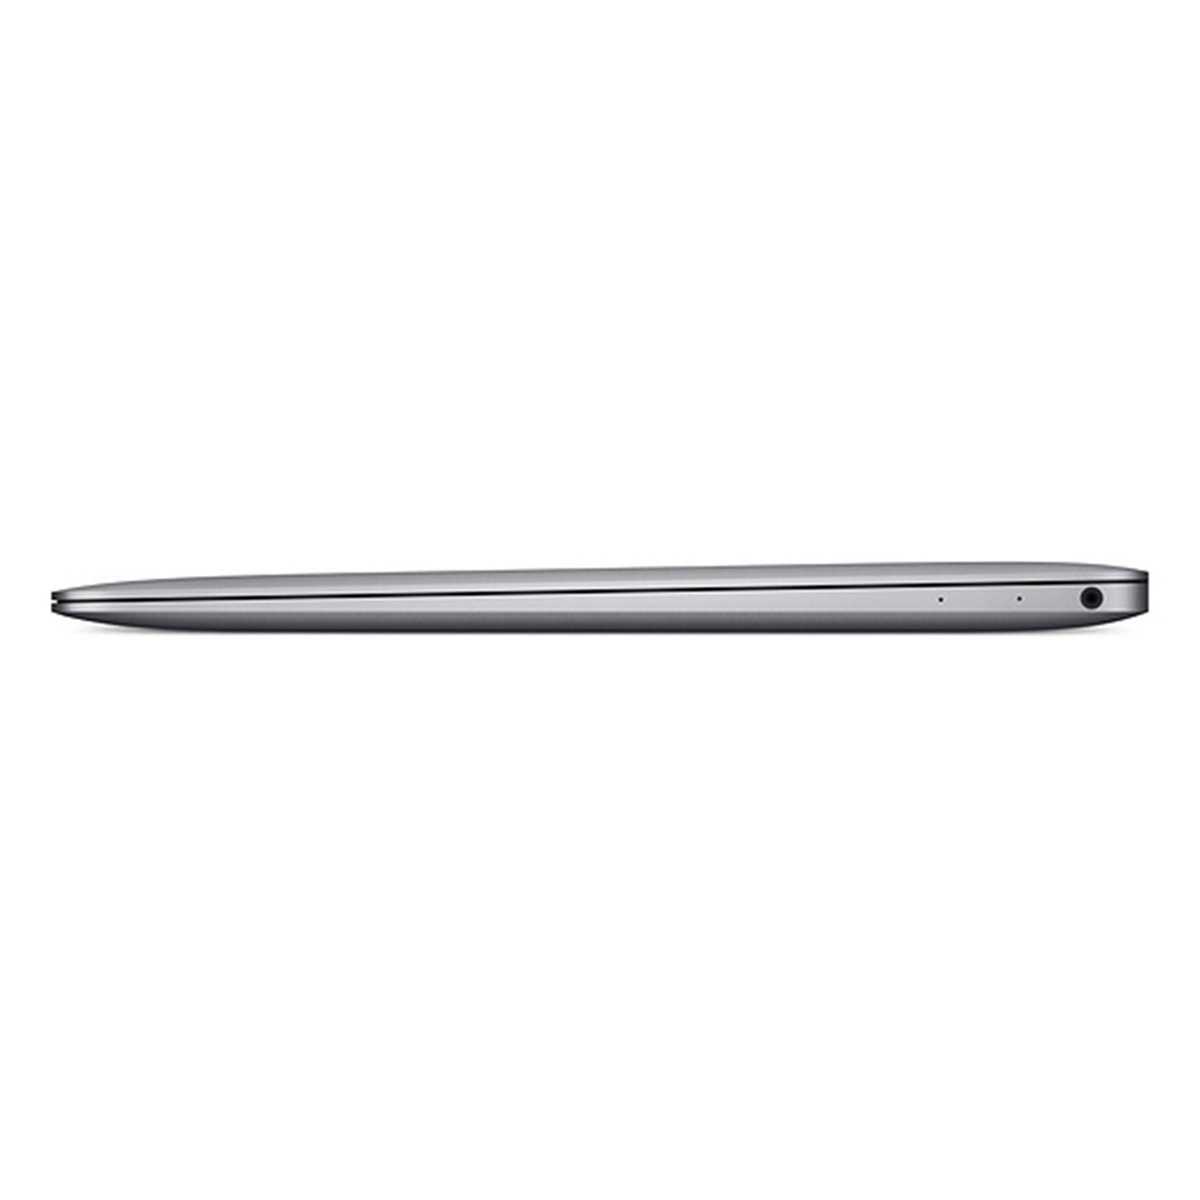 Apple Macbook 12 inches LED Space Grey (MNYG2ZS/A) - Intel i5 1.3 GHz, 8 GB RAM, 512 GB Hybrid (HDD/SDD)